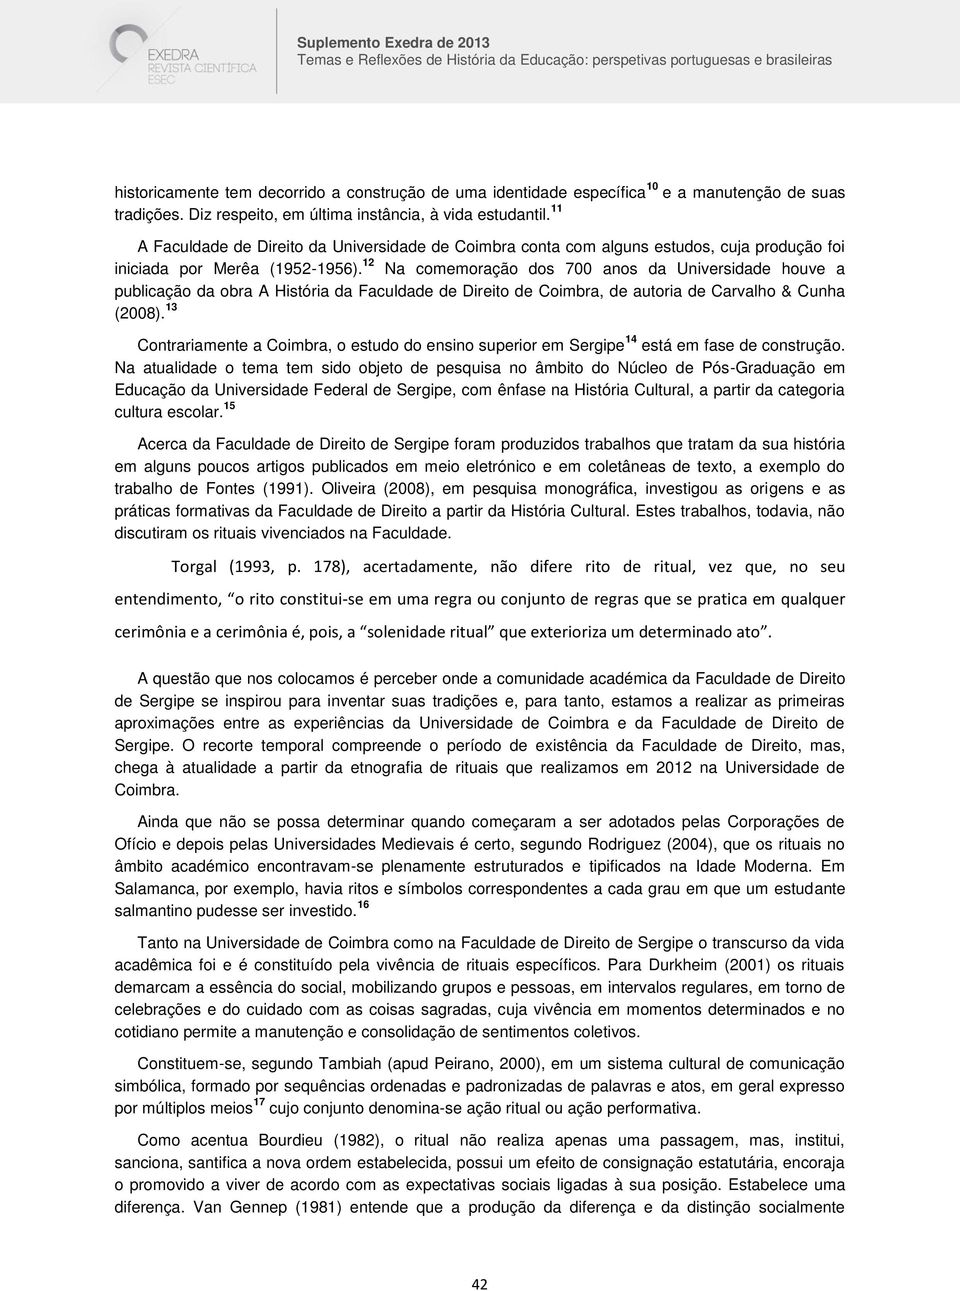 12 Na comemoração dos 700 anos da Universidade houve a publicação da obra A História da Faculdade de Direito de Coimbra, de autoria de Carvalho & Cunha (2008).